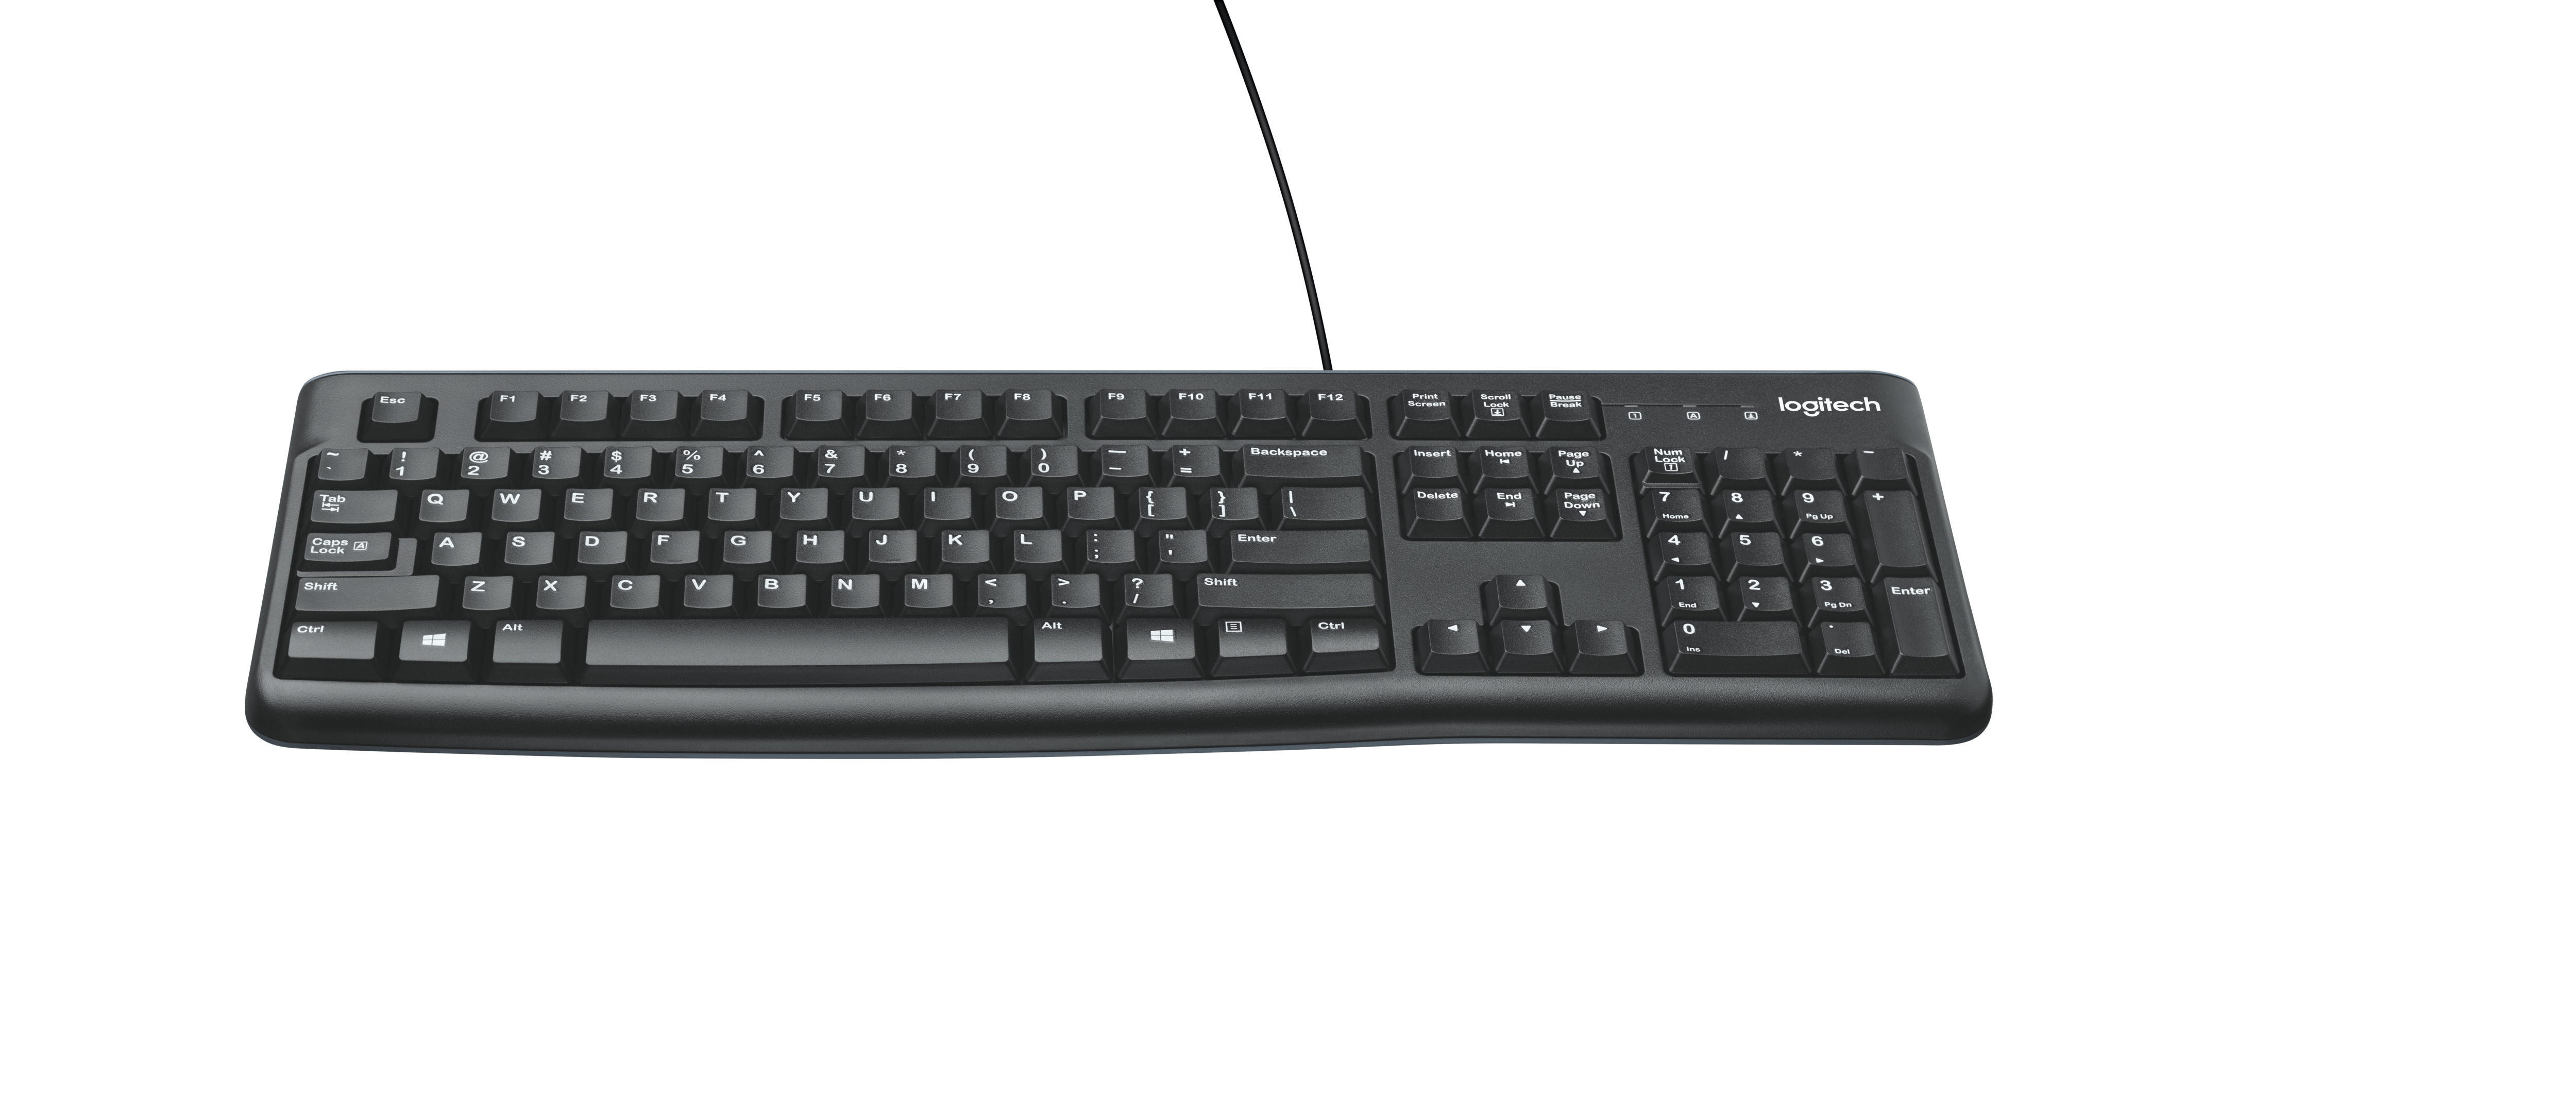 LOGITECH Keyboard K120 Int NSEA layout - Toetsenbord Wired